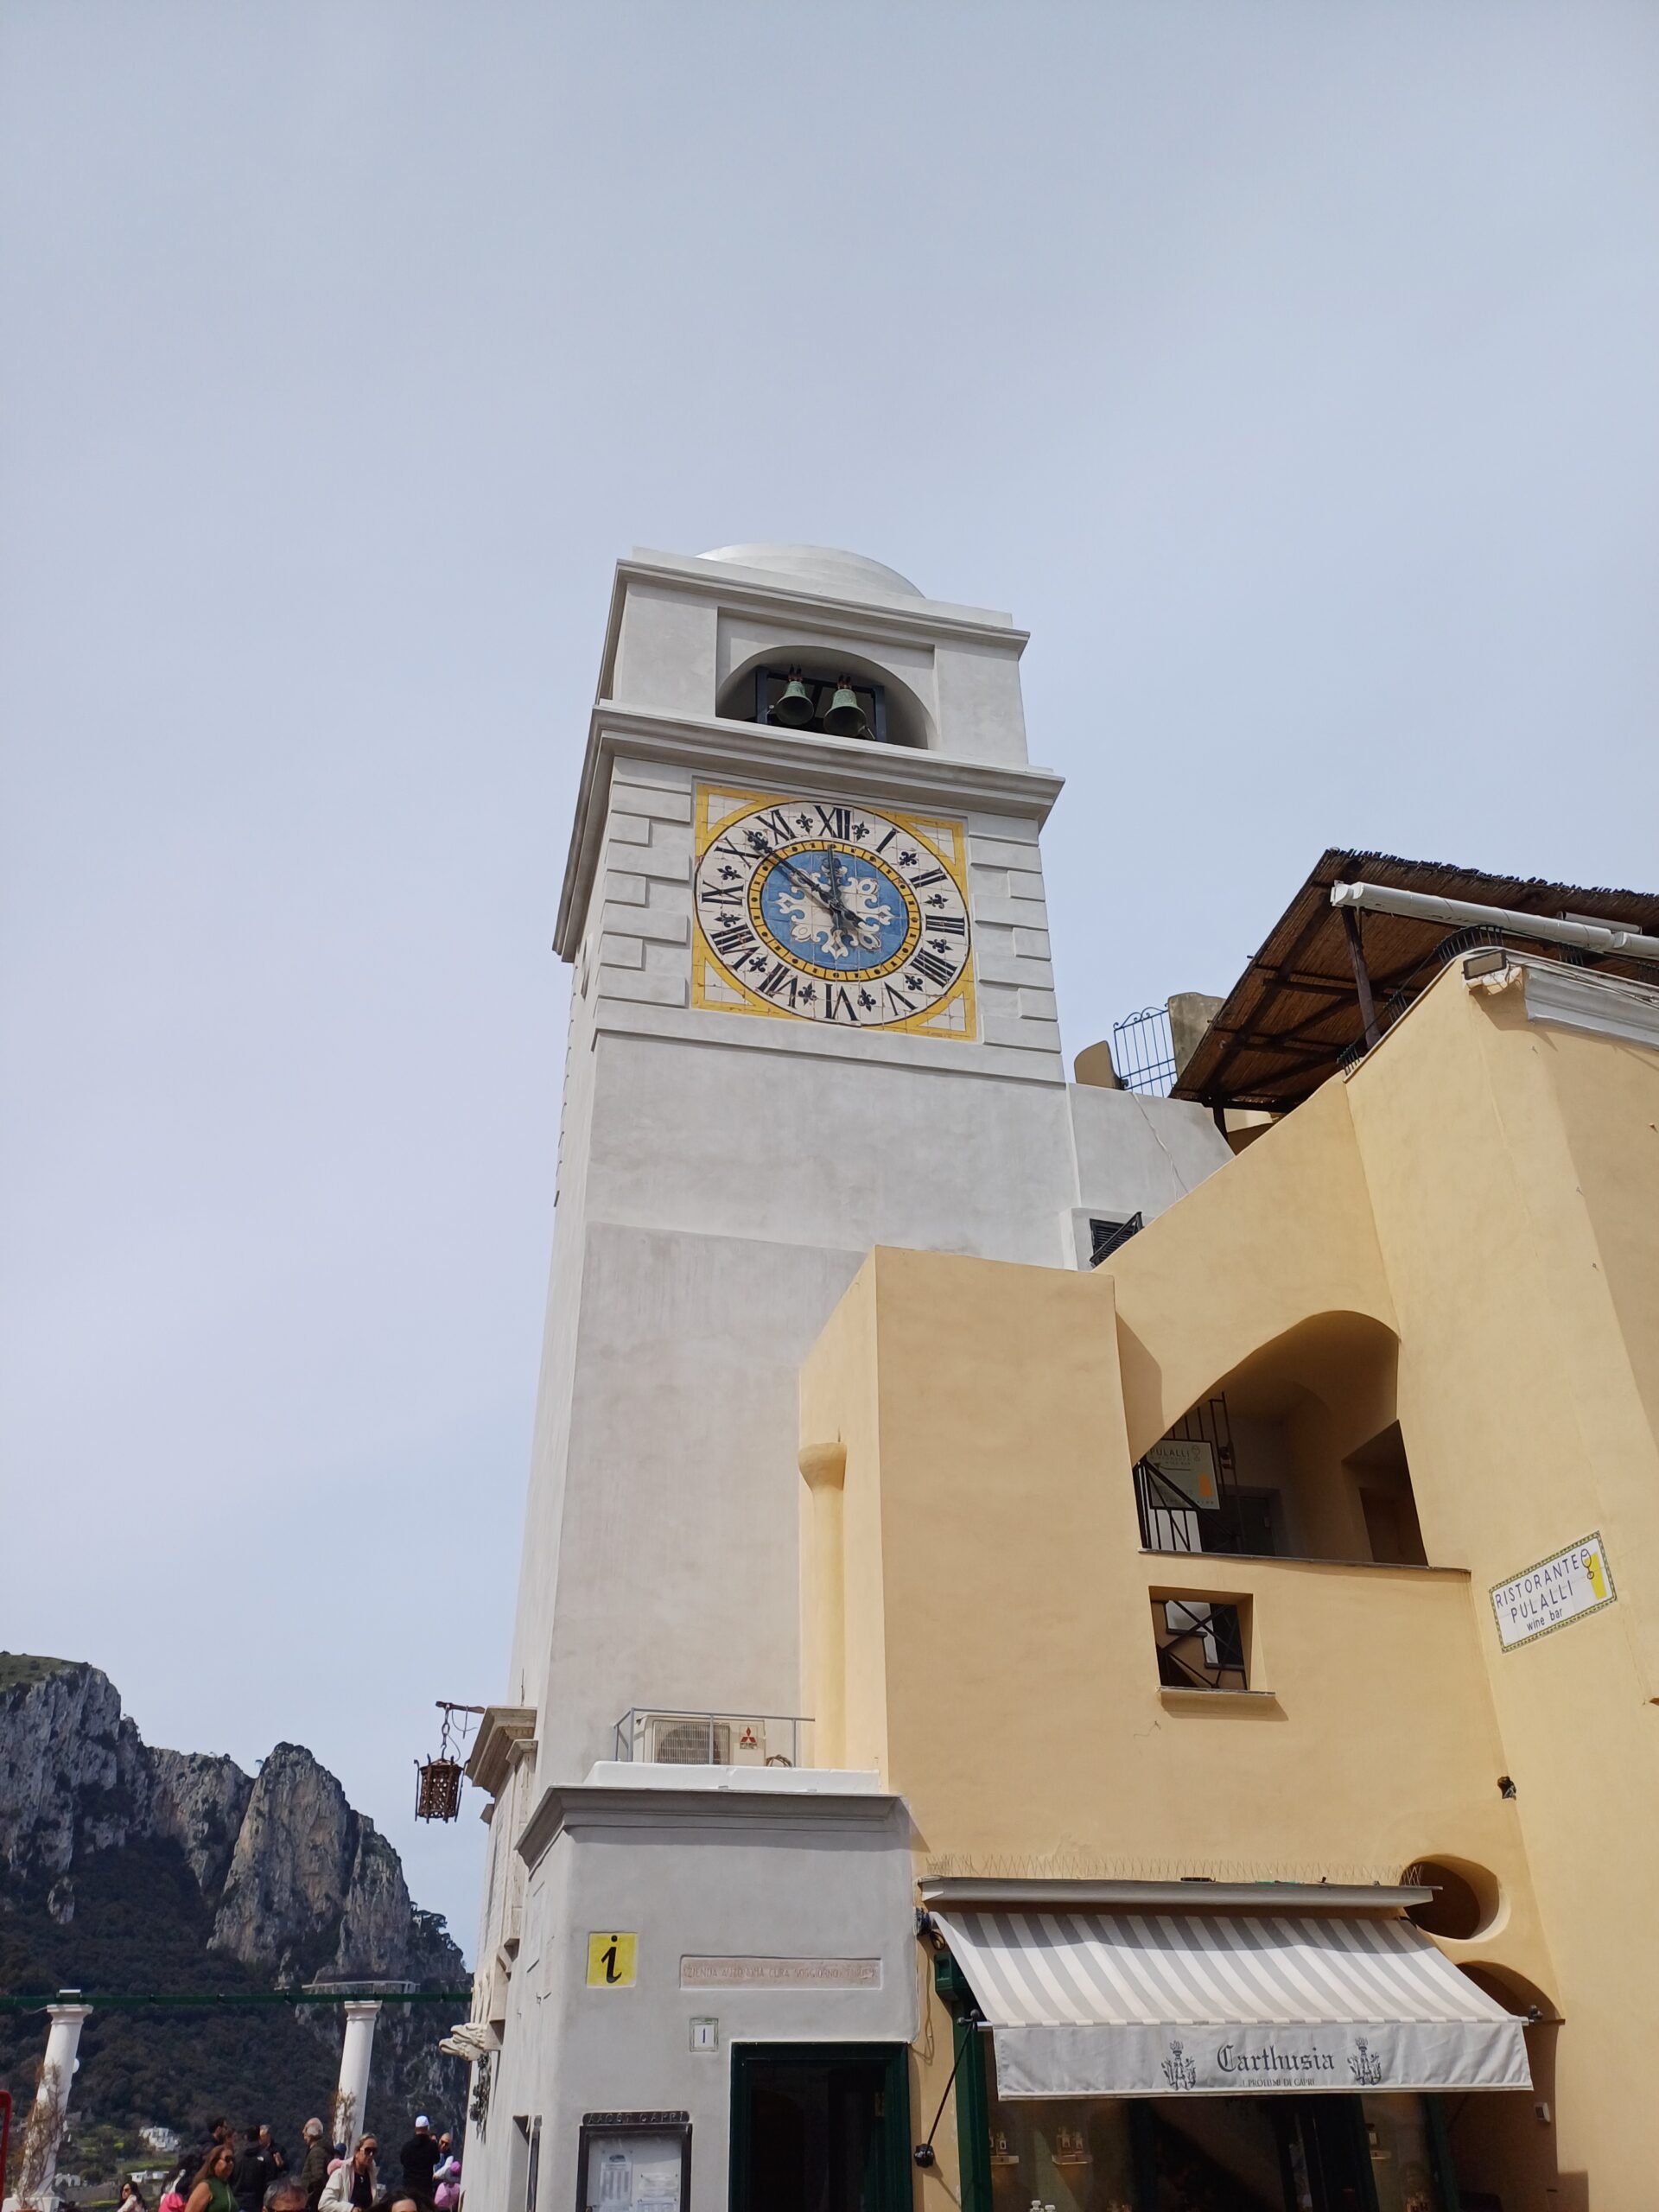 Terminati i lavori alla torre dell’orologio nella Piazzetta di Capri, tornano a suonare le campane (foto e video)